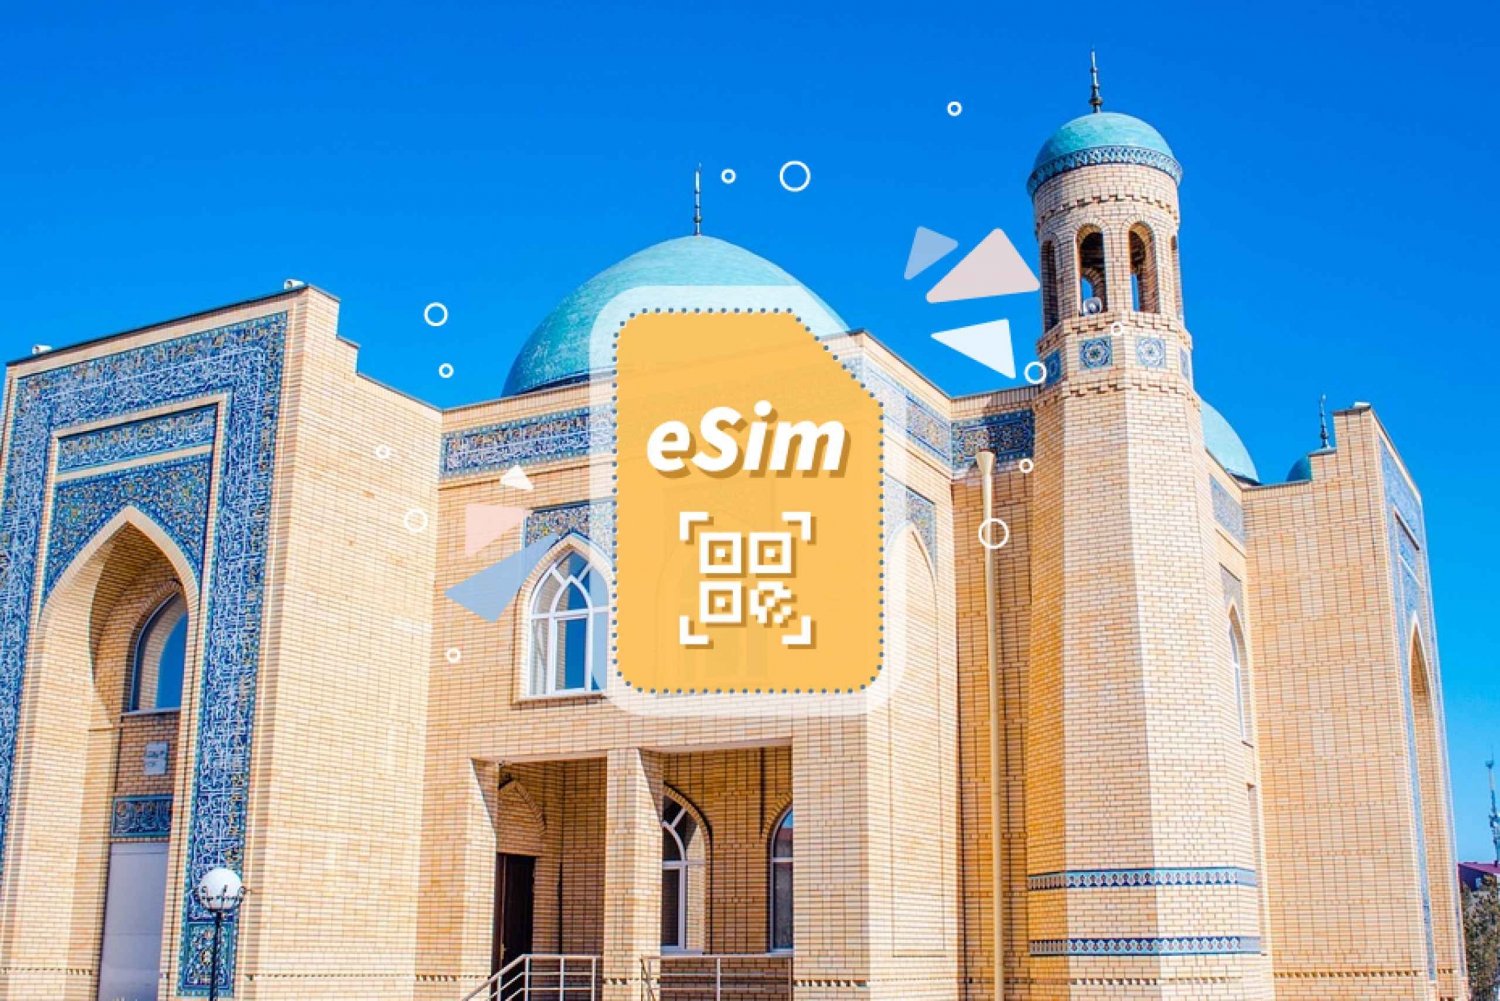 Kazakhstan/Europe: eSim Mobile Data Plan